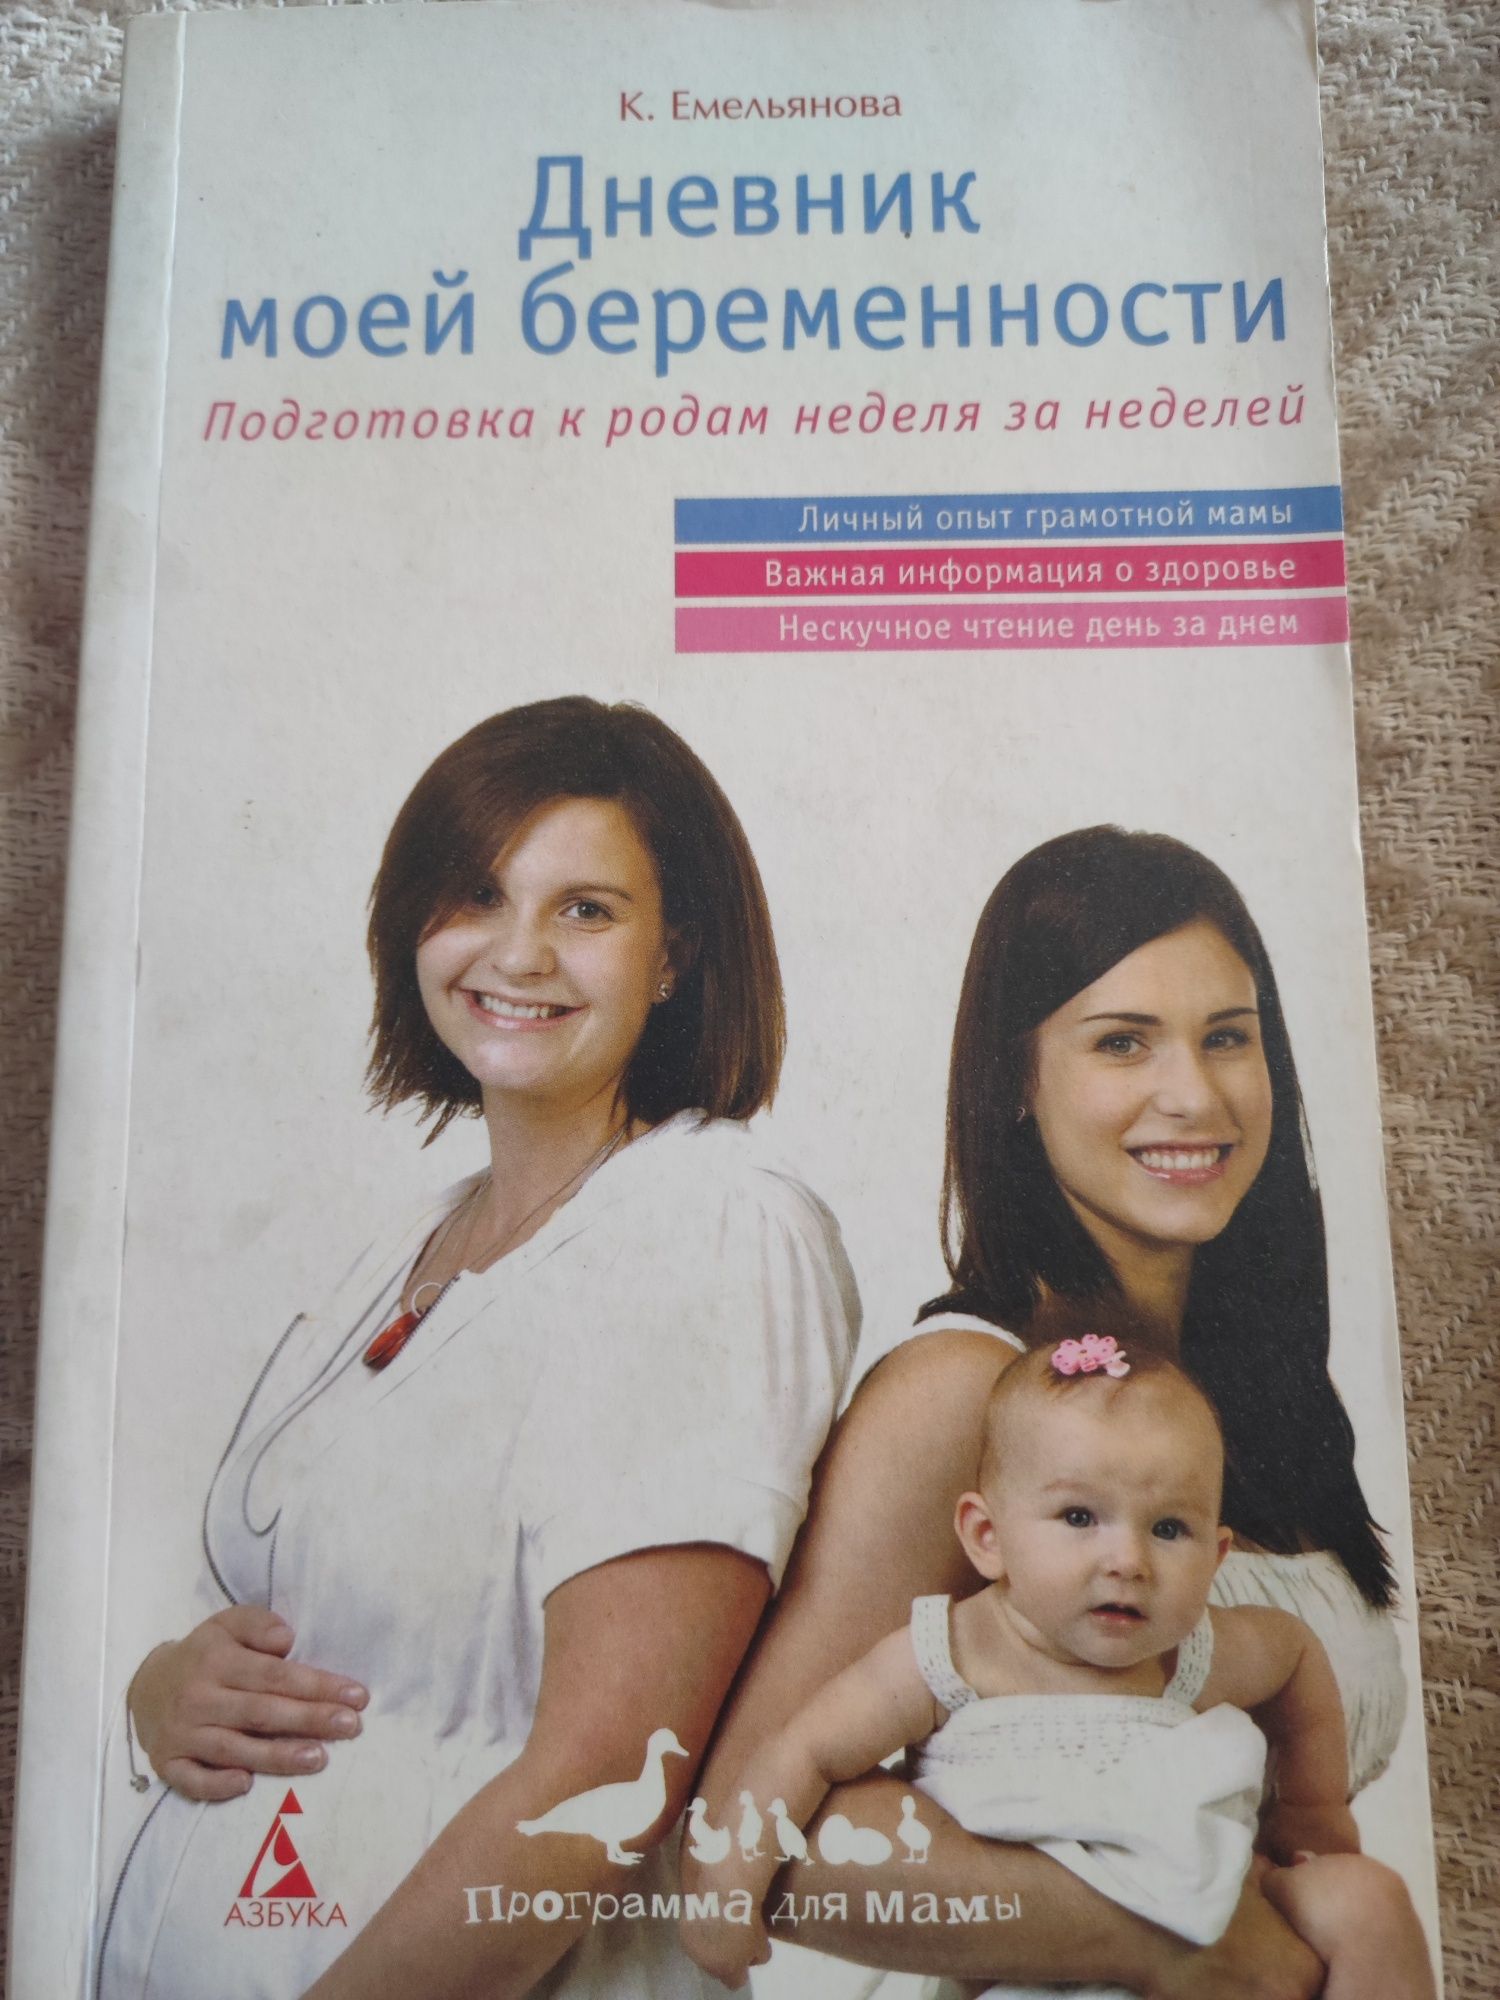 Книга "Дневник моей беременности